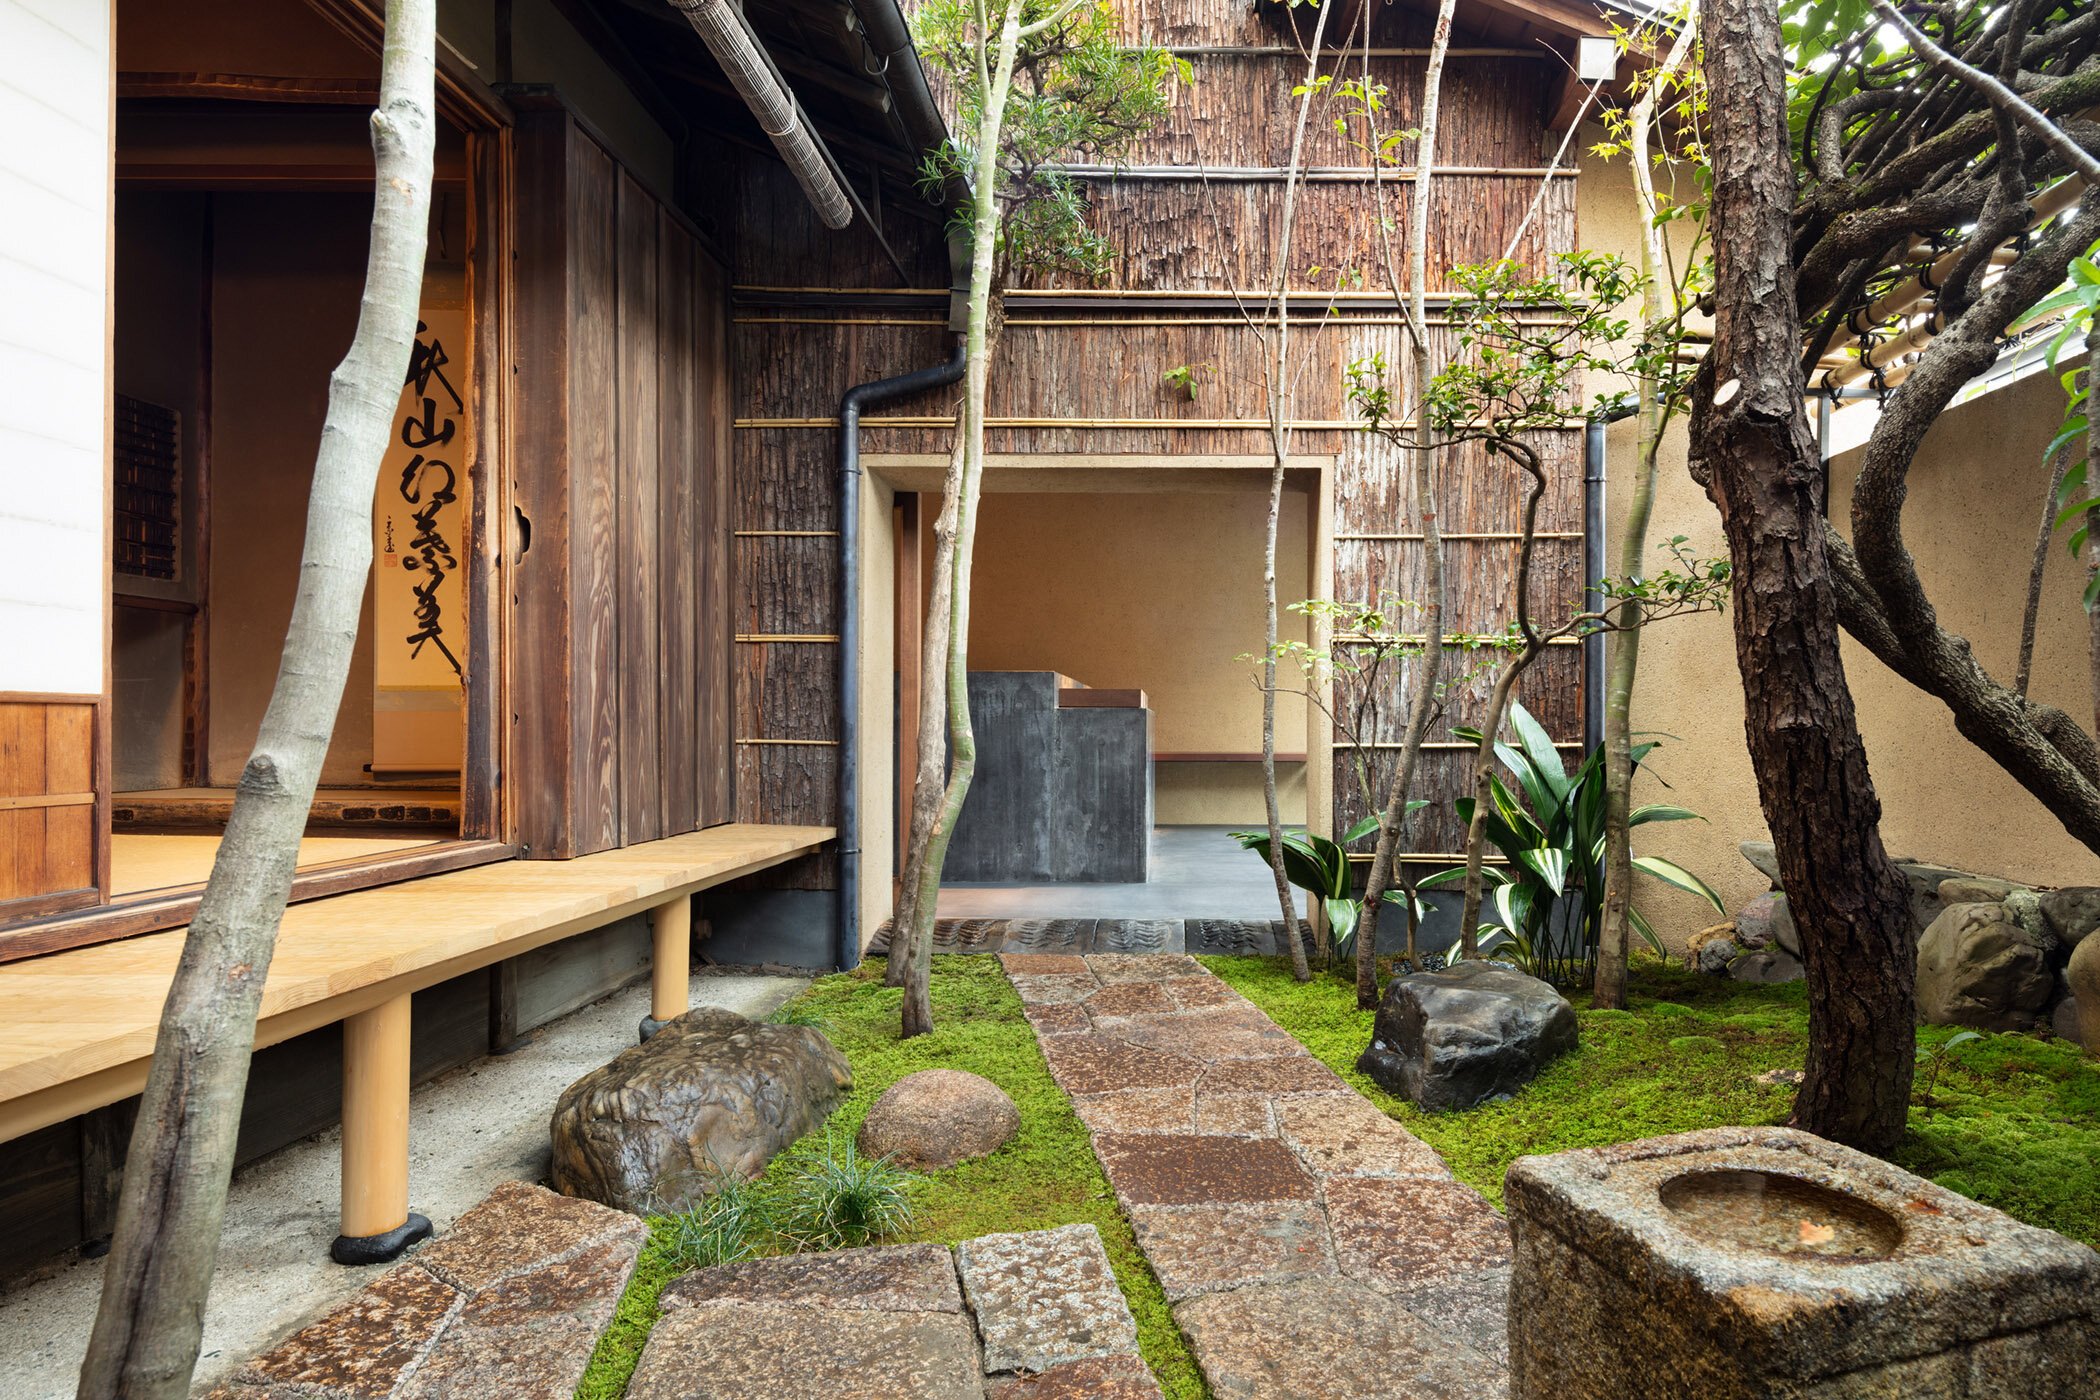  柳原照弘 Teruhiro Yanagihara Studioがインテリアデザインを手掛けた京都の尾張屋本店 菓子処。庭園は西海園芸の山口陽介による。 